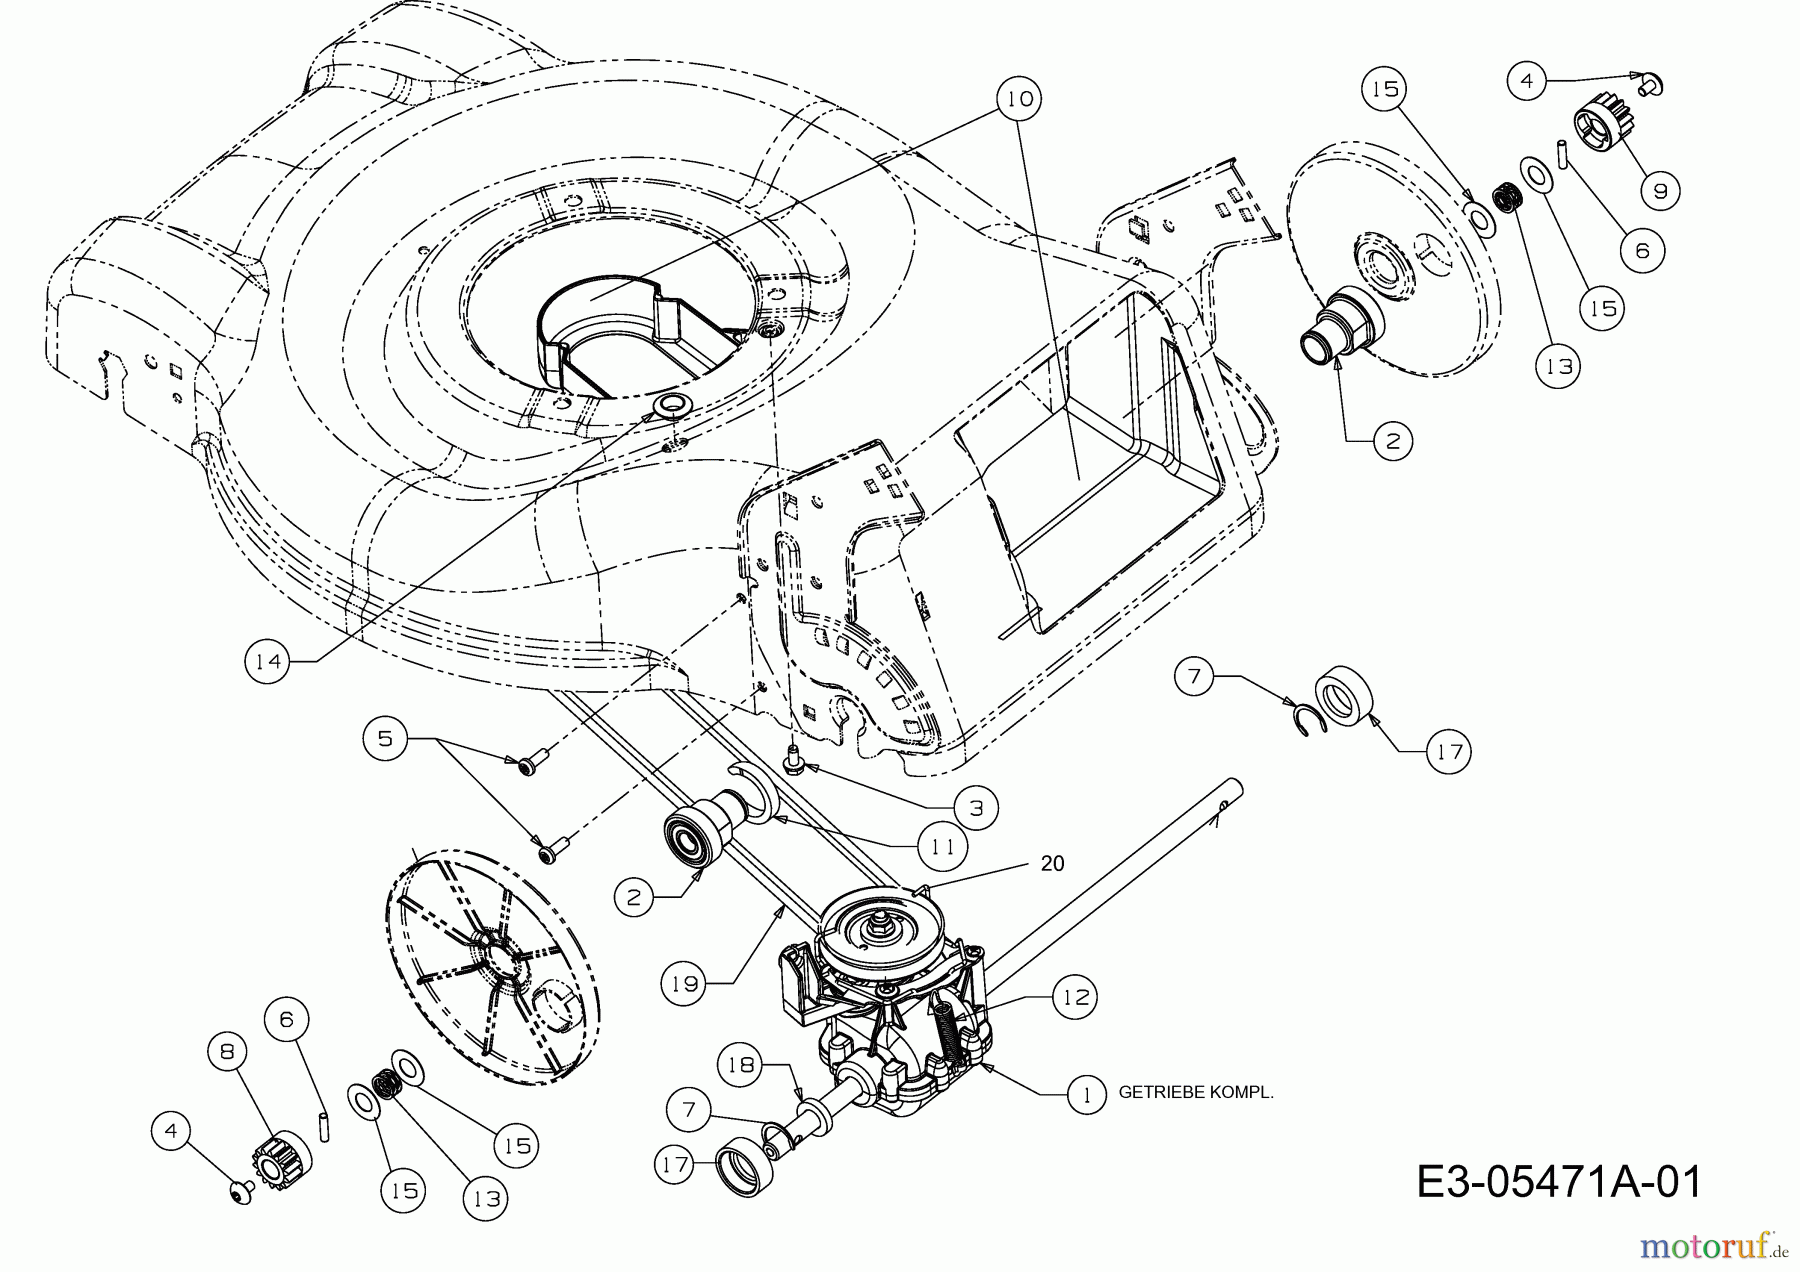  Lux Tools Motormäher mit Antrieb B 46 MA 12D-J54H694  (2011) Getriebe